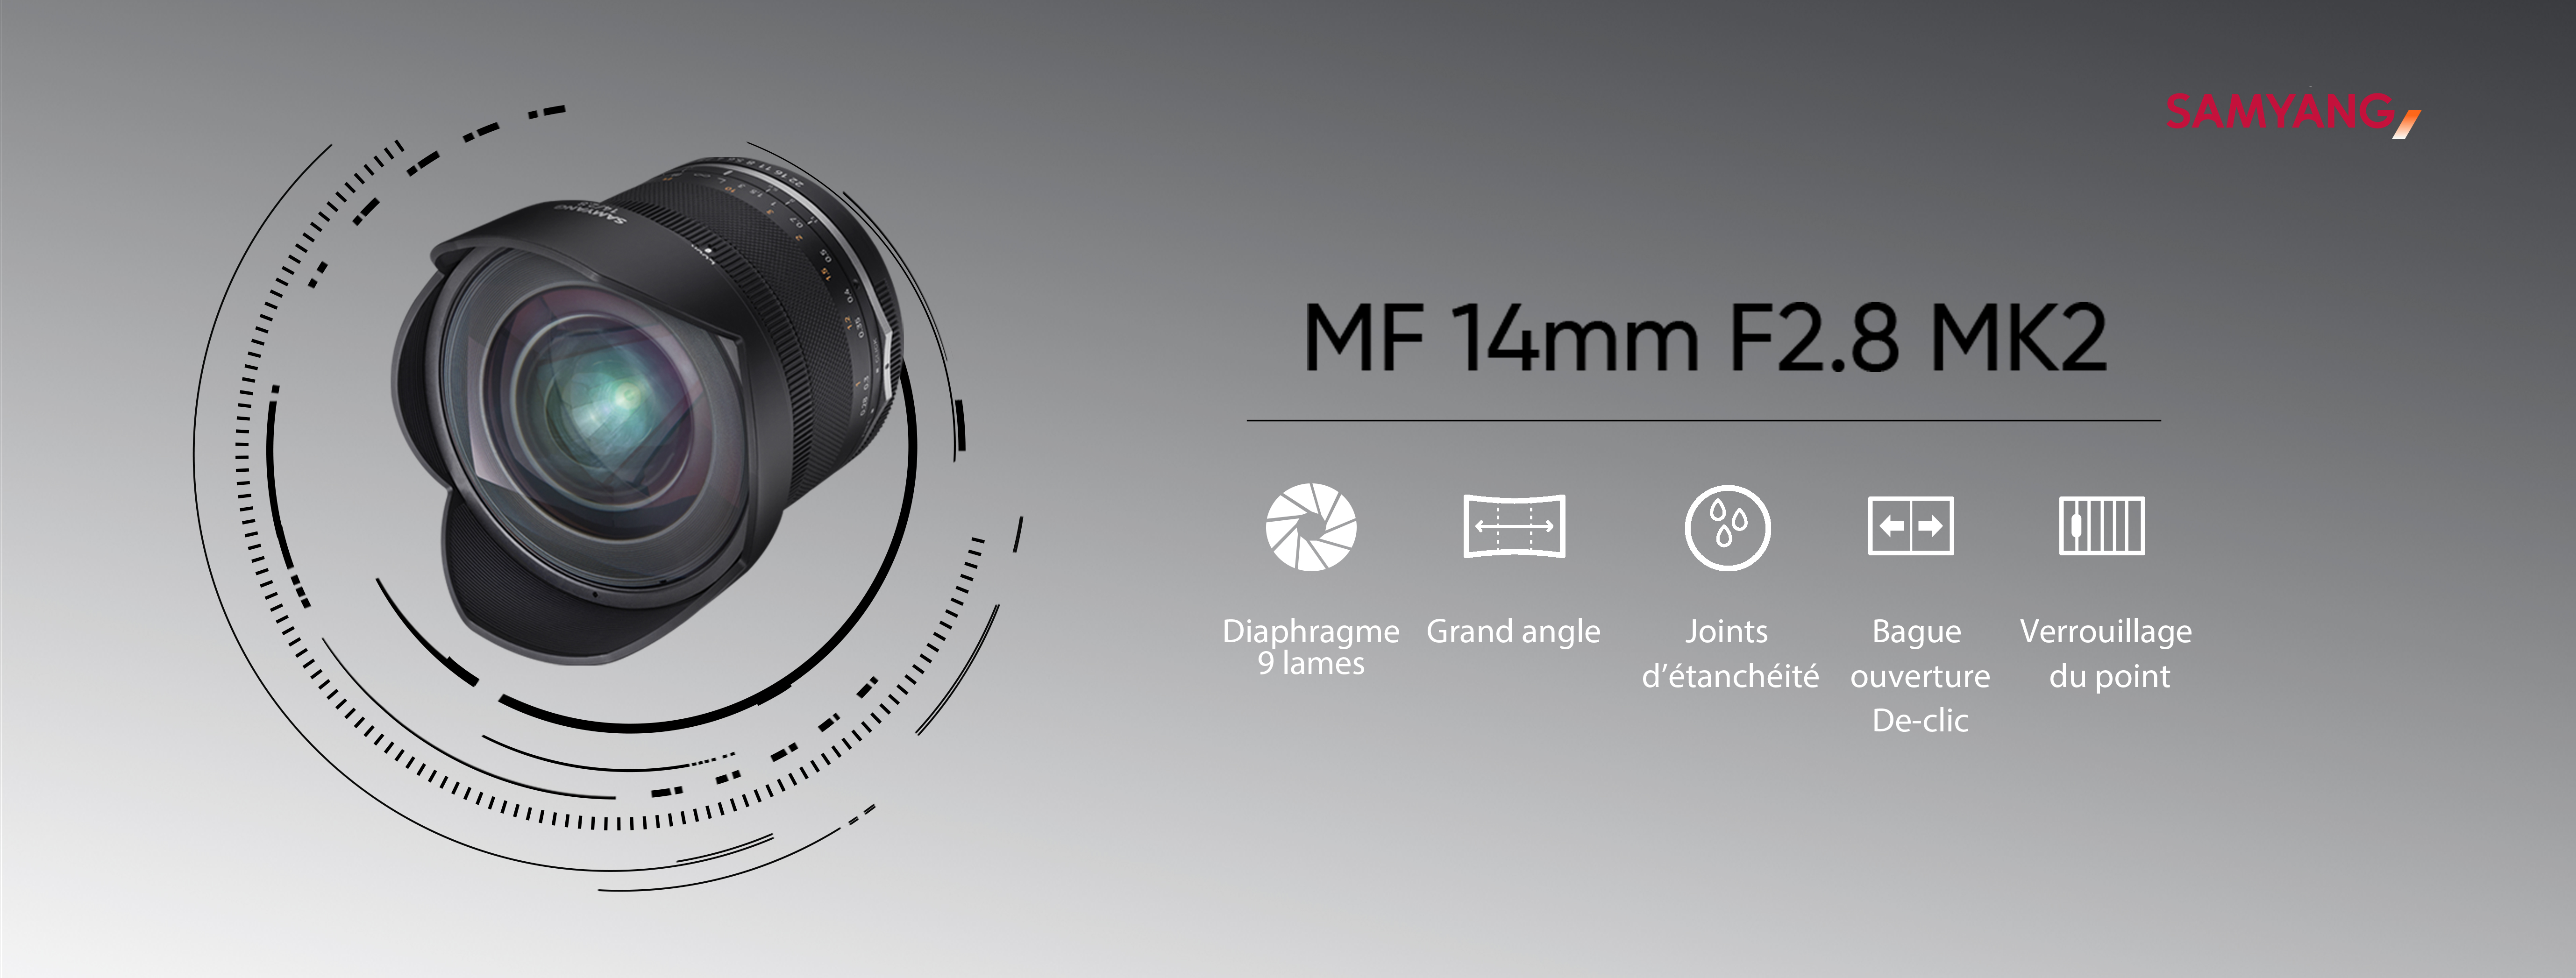 MF 14mm F2.8 MK2